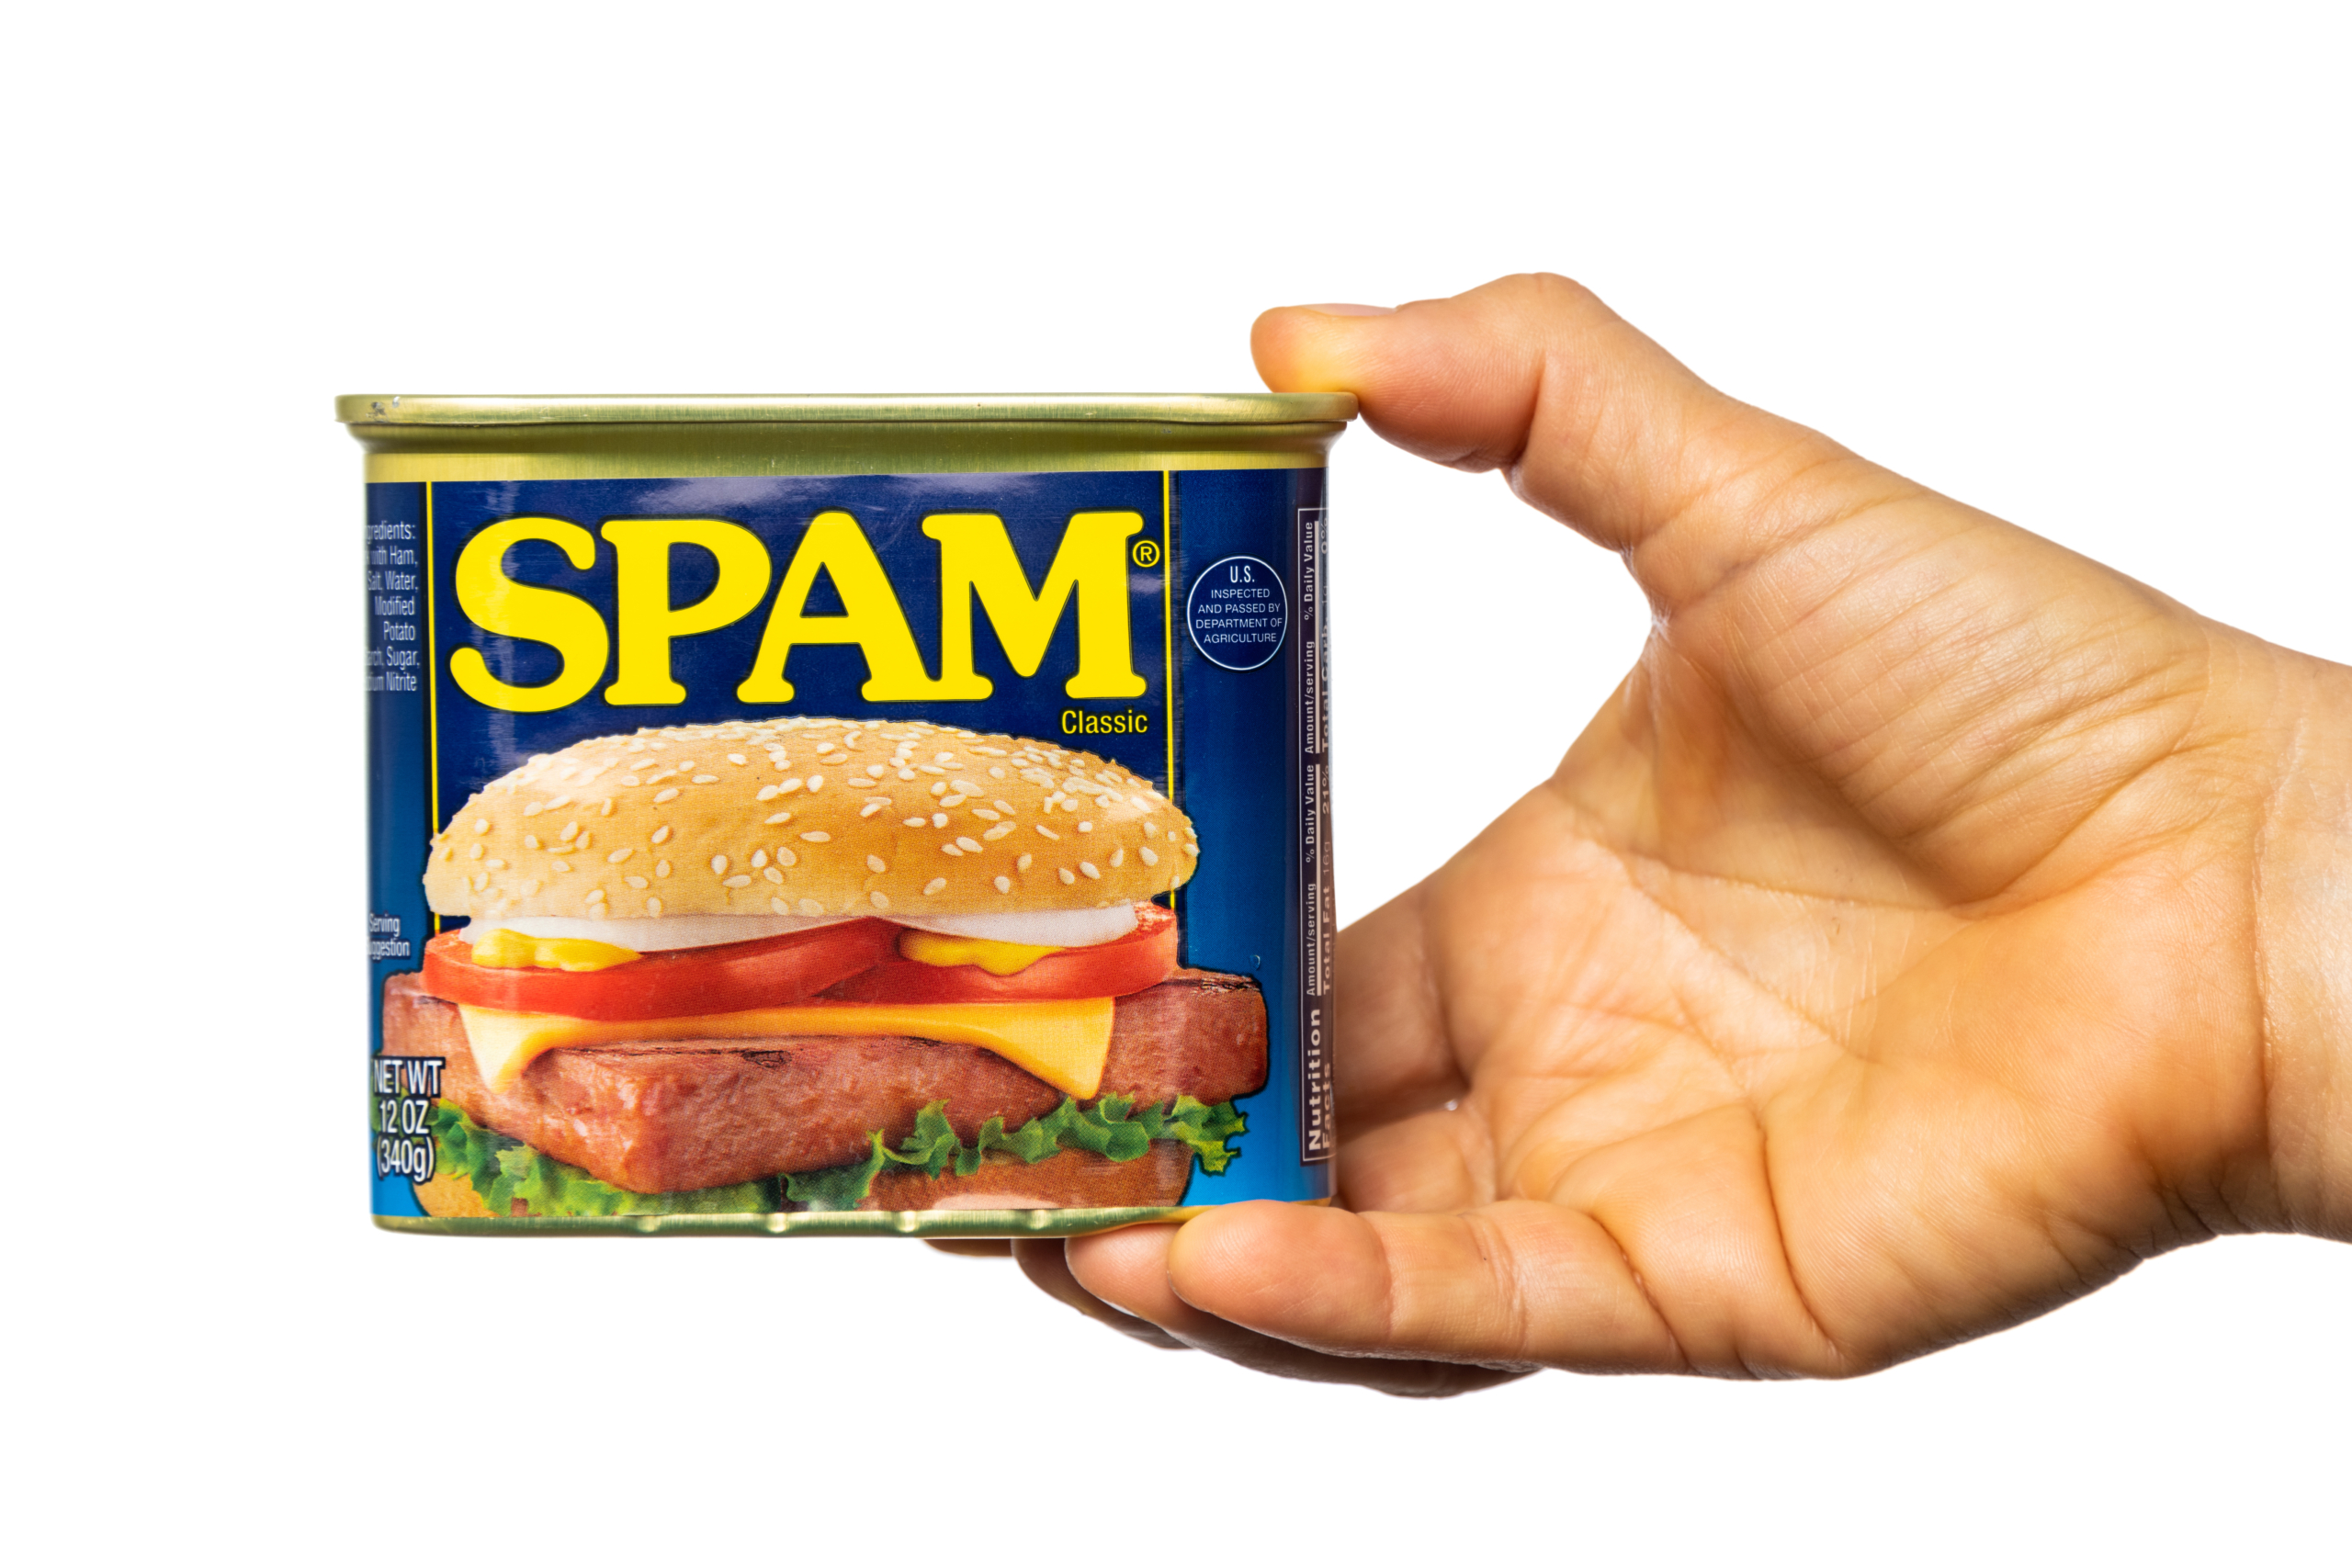 Thịt hộp Spam là thịt hộp được chế biến từ thịt lợn, muối, đường, tinh bột và gia vị, có thể ăn ngay sau khi mở. Đây là bữa ăn khẩn cấp của quân đội Hoa Kỳ trong Đệ nhị Thế chiến khi nguồn cung cấp thực phẩm khan hiếm. (Ảnh: Shutterstock)